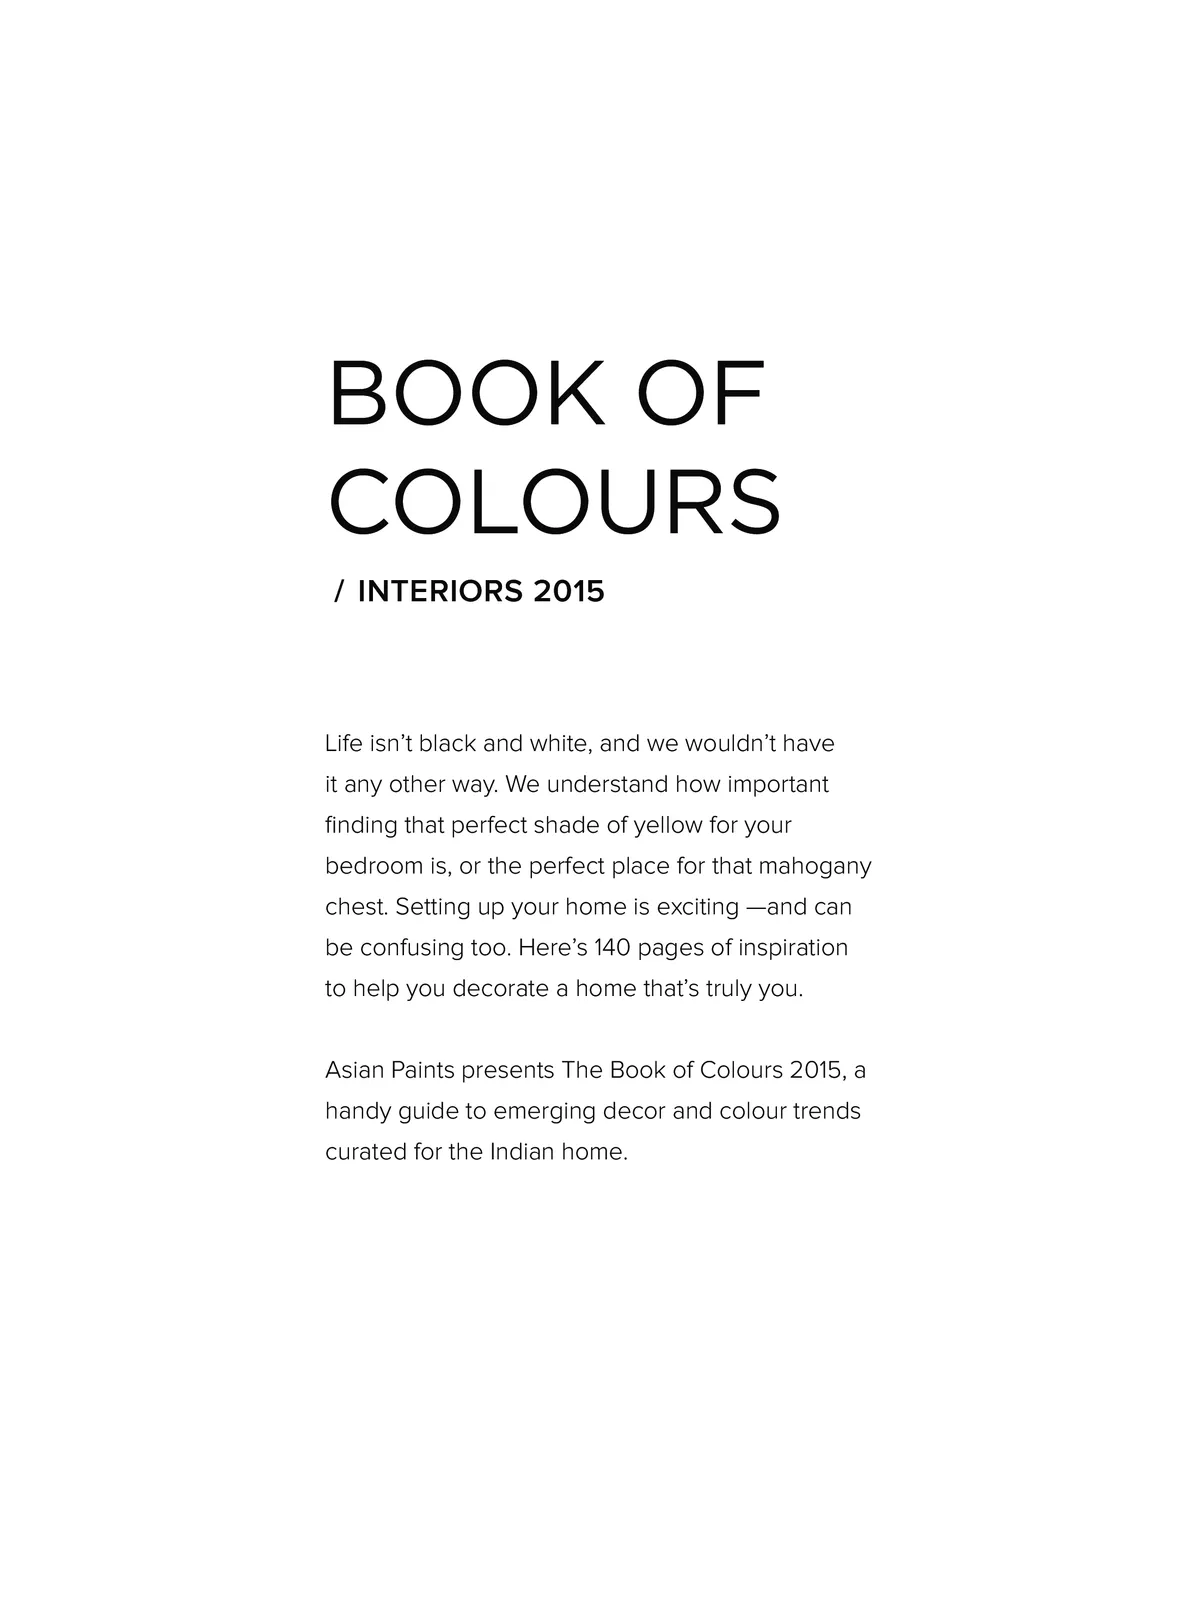 Asian Paint Colour Book